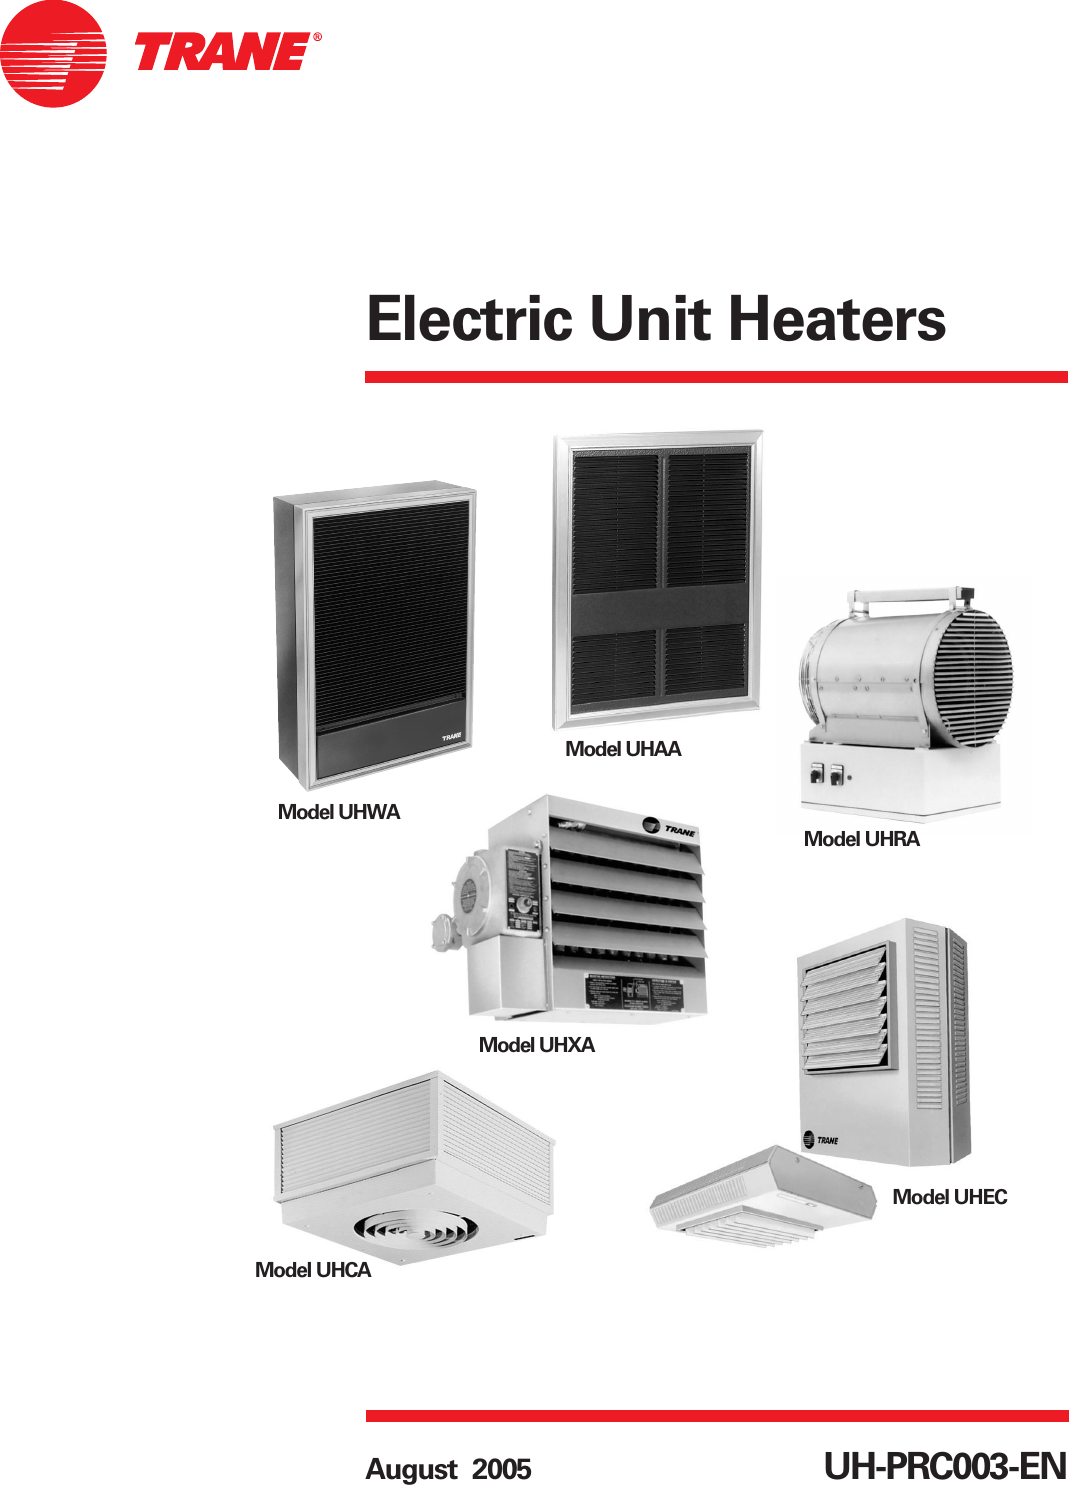 Trane Electric Unit Heaters Catalogue UH PRC003 EN